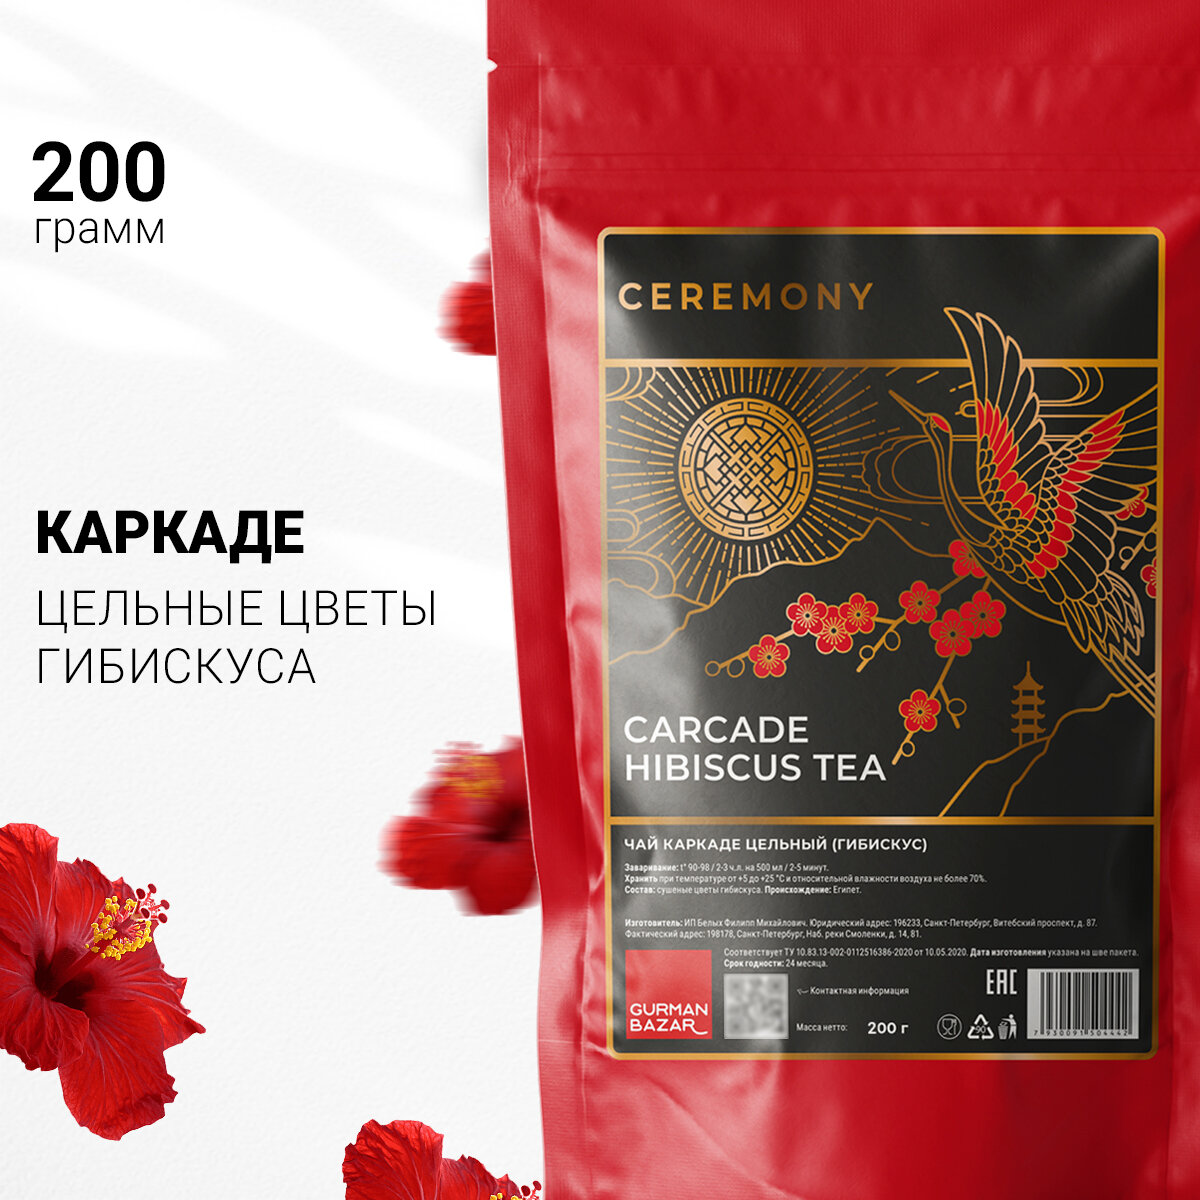 Ceremony Настоящий Красный Чай Каркаде (Гибискус) Цельный (Carcade Hibiscus Red Tea Цветочный Каркадэ)